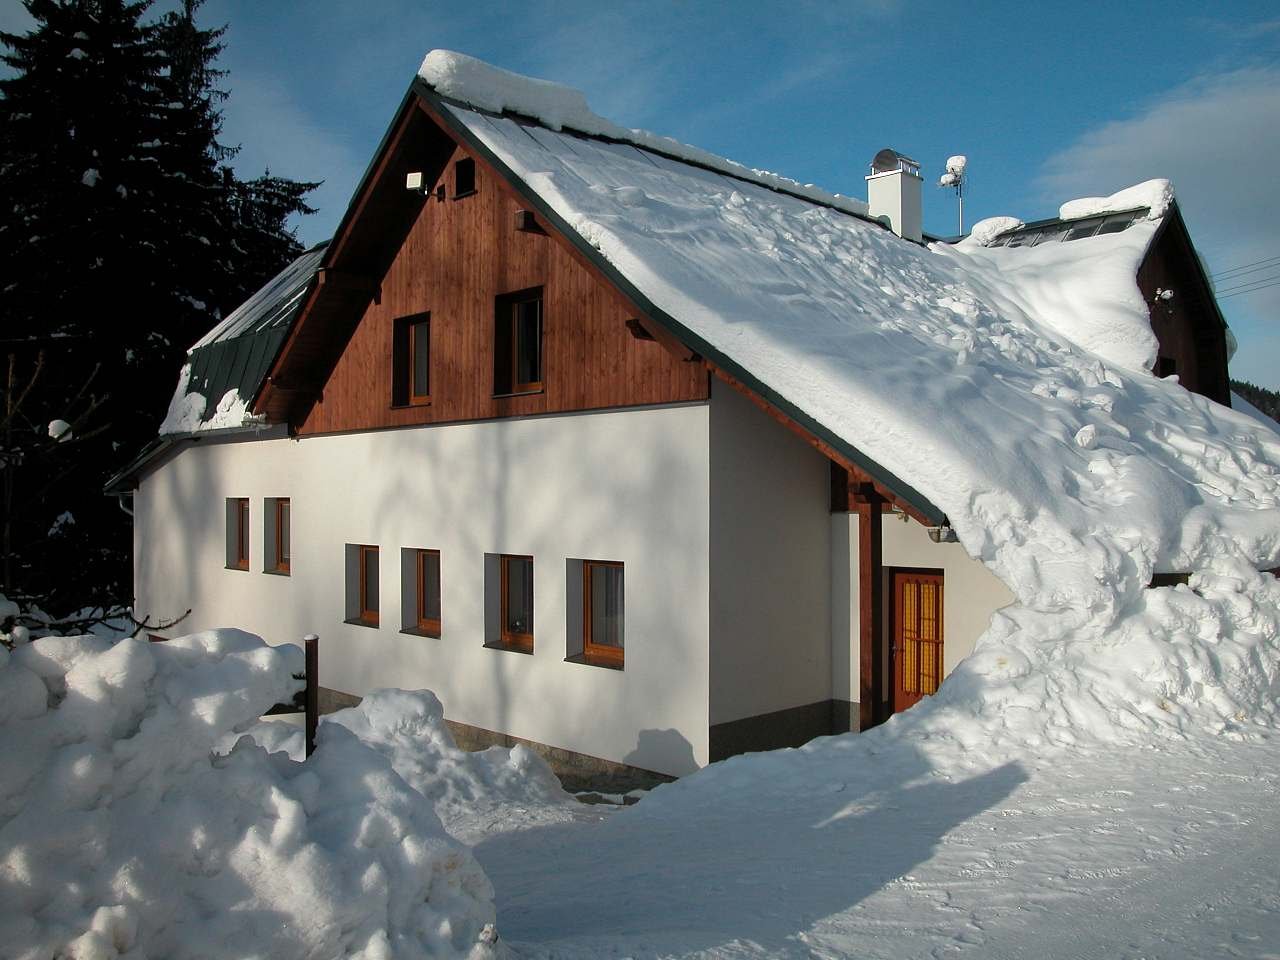 La cabaña de U Alenka en invierno